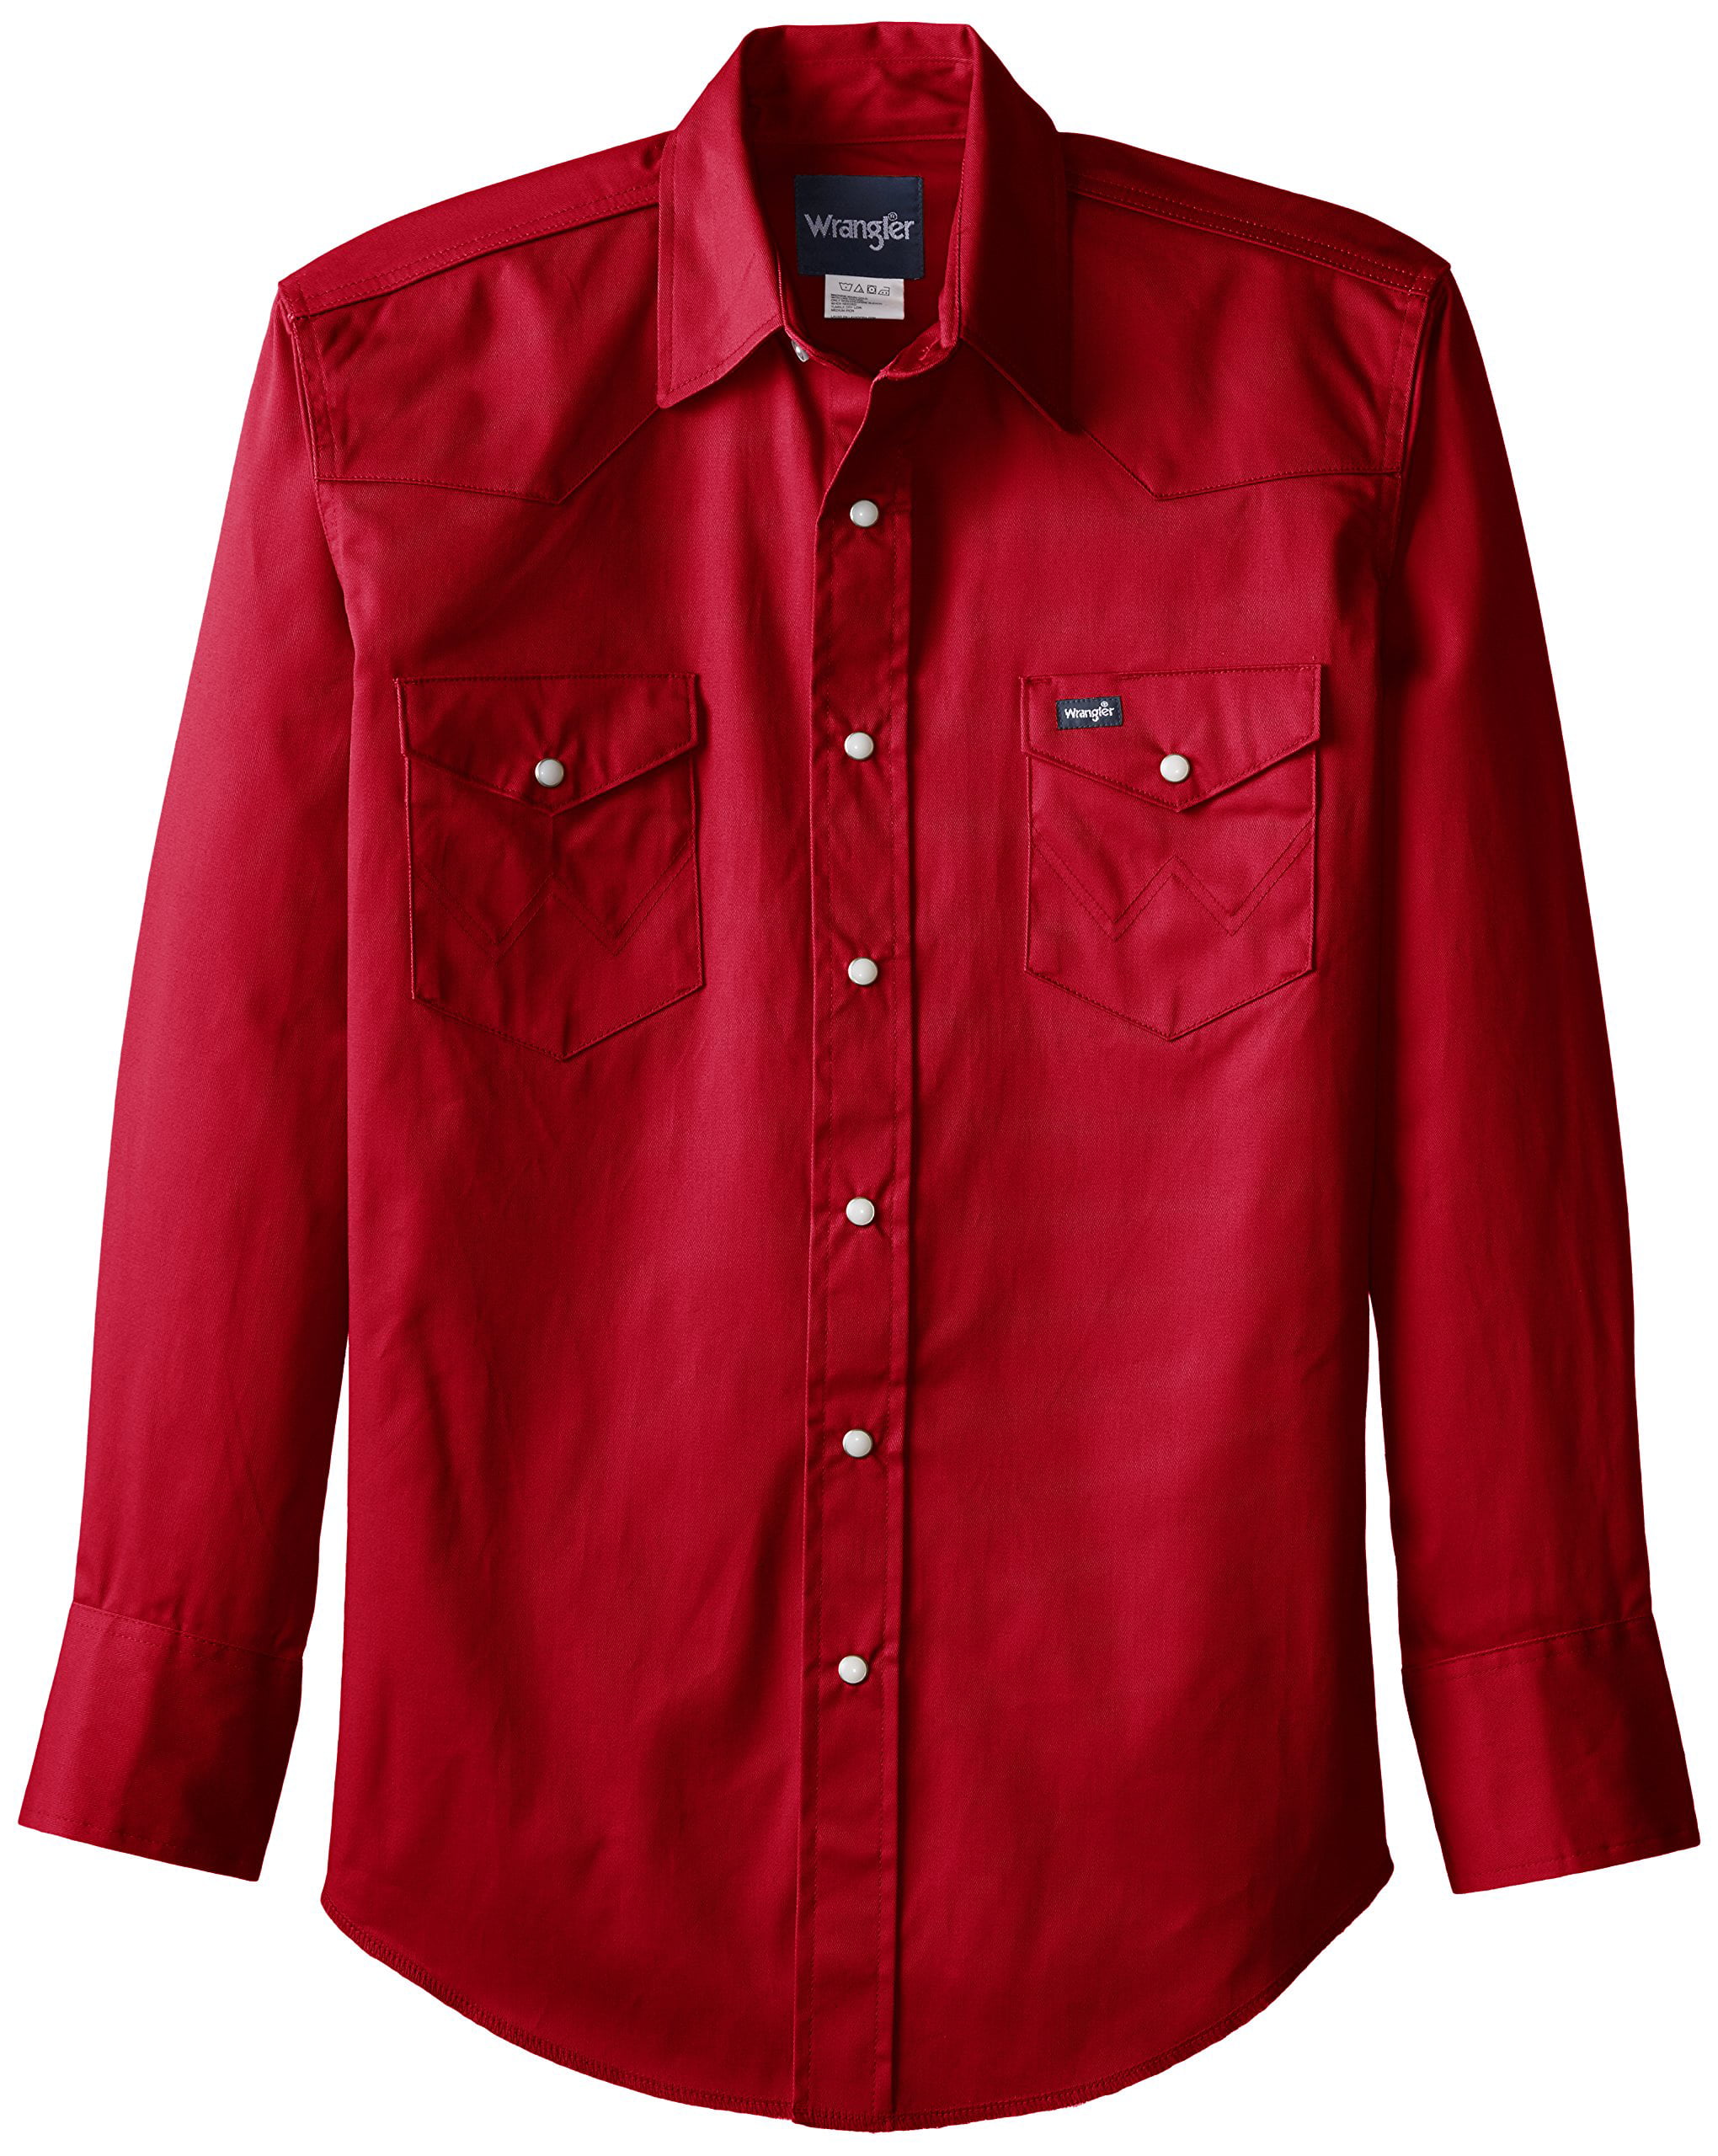 Купить рубашку кнопки. Wrangler authentic Western рубашка. Рубашка Wrangler Cowboy Cut. Waveborm authentic Western рубашки мужские. Рубашка Wrangler мужские 170044.